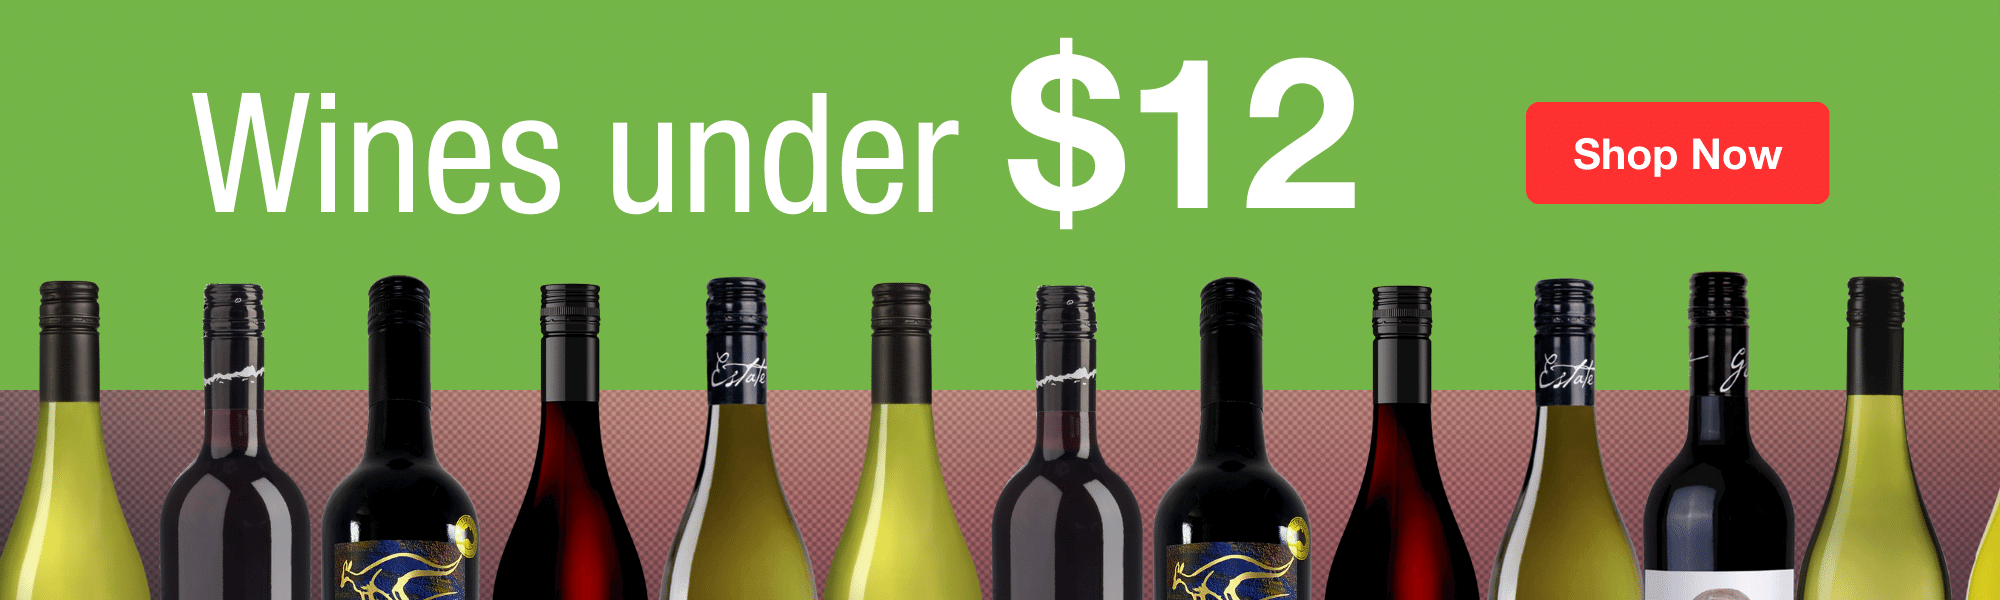 Wines under $12